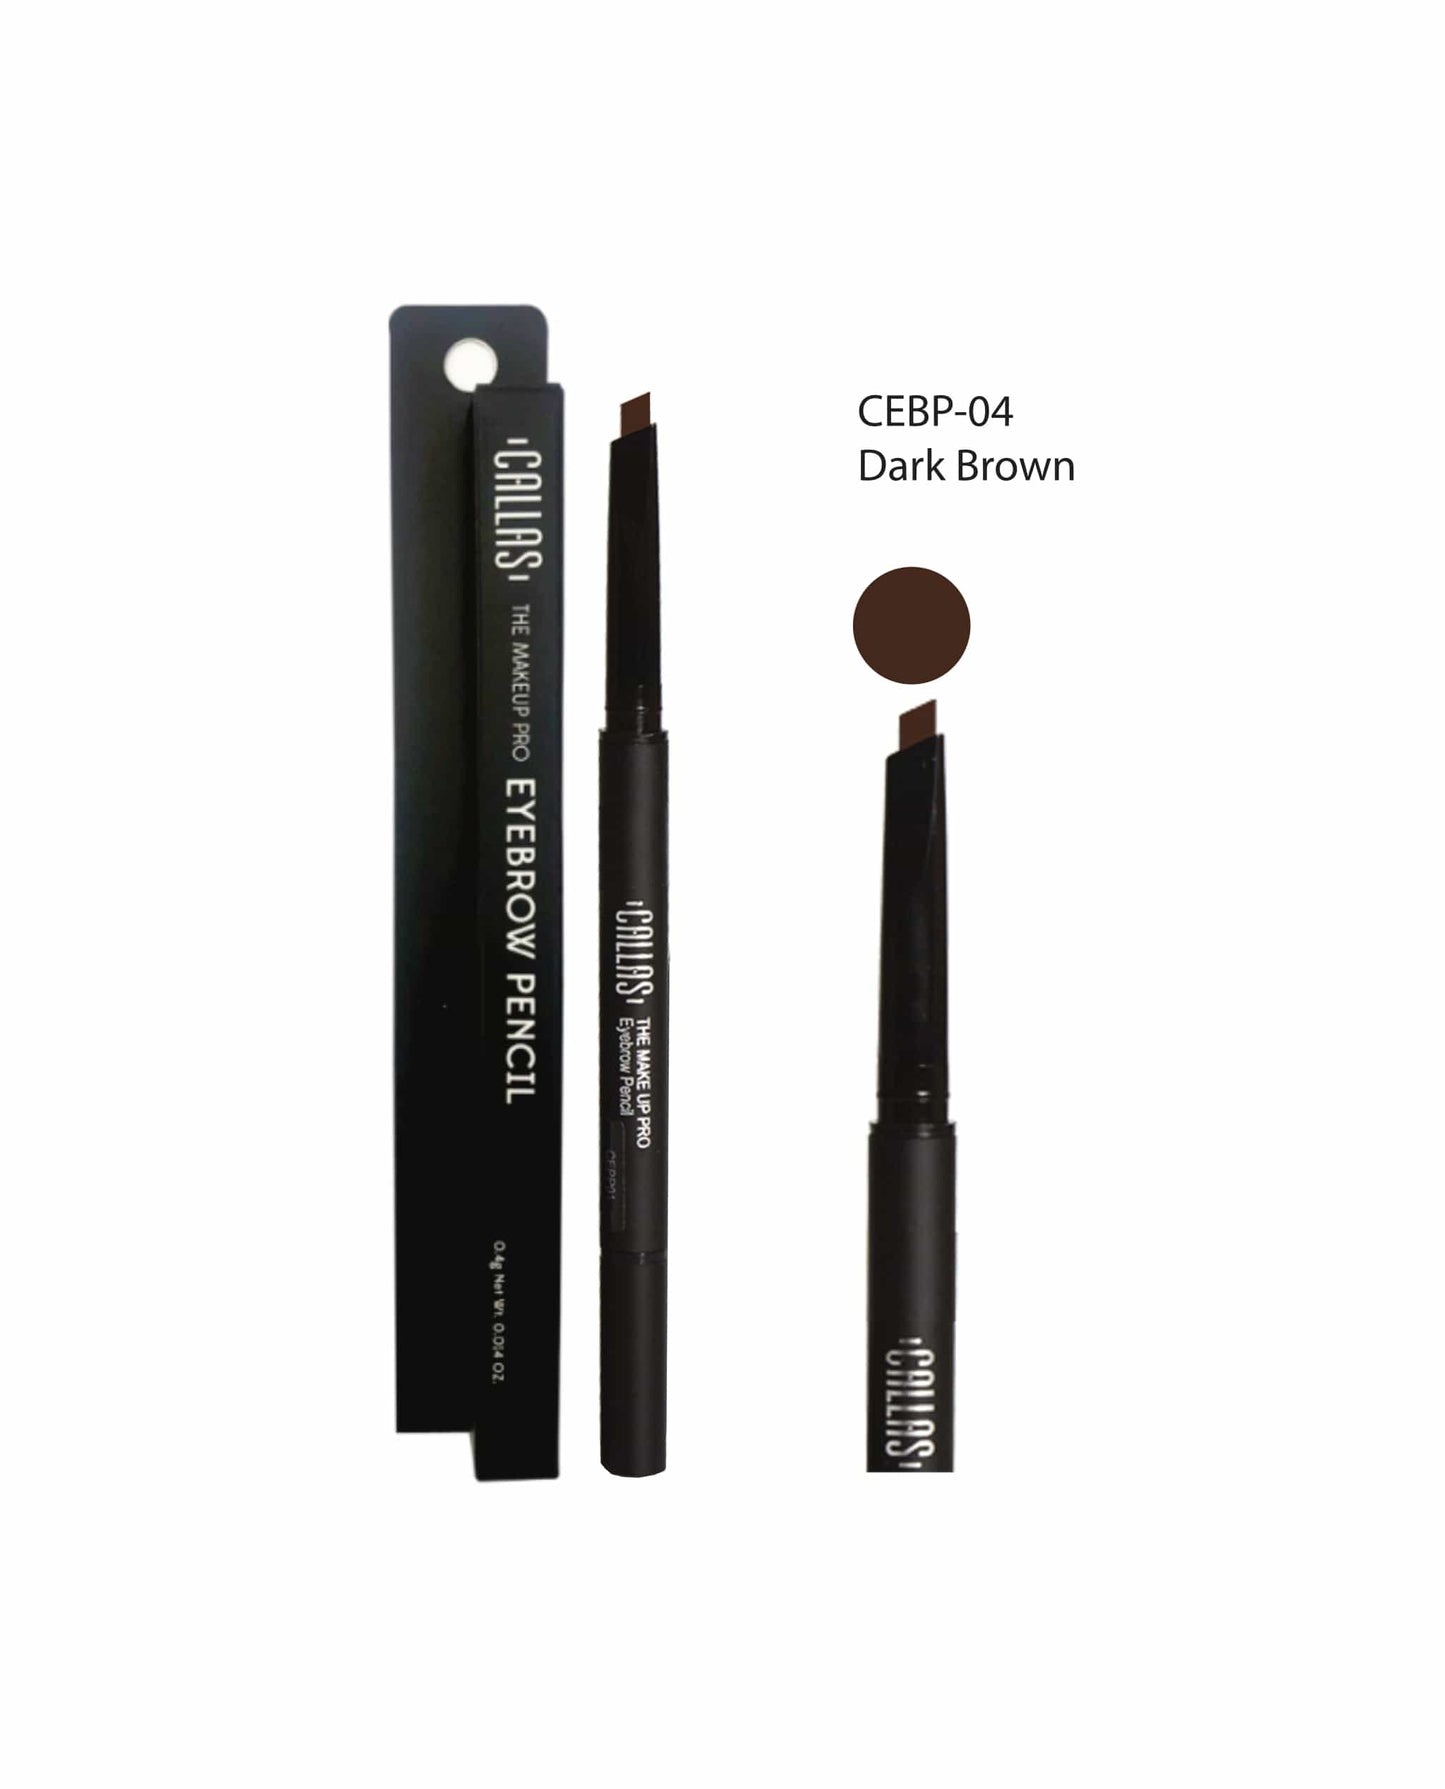 CALLAS The Makeup Pro Eyebrow Pencil (No Refill) - 03 Light Brown